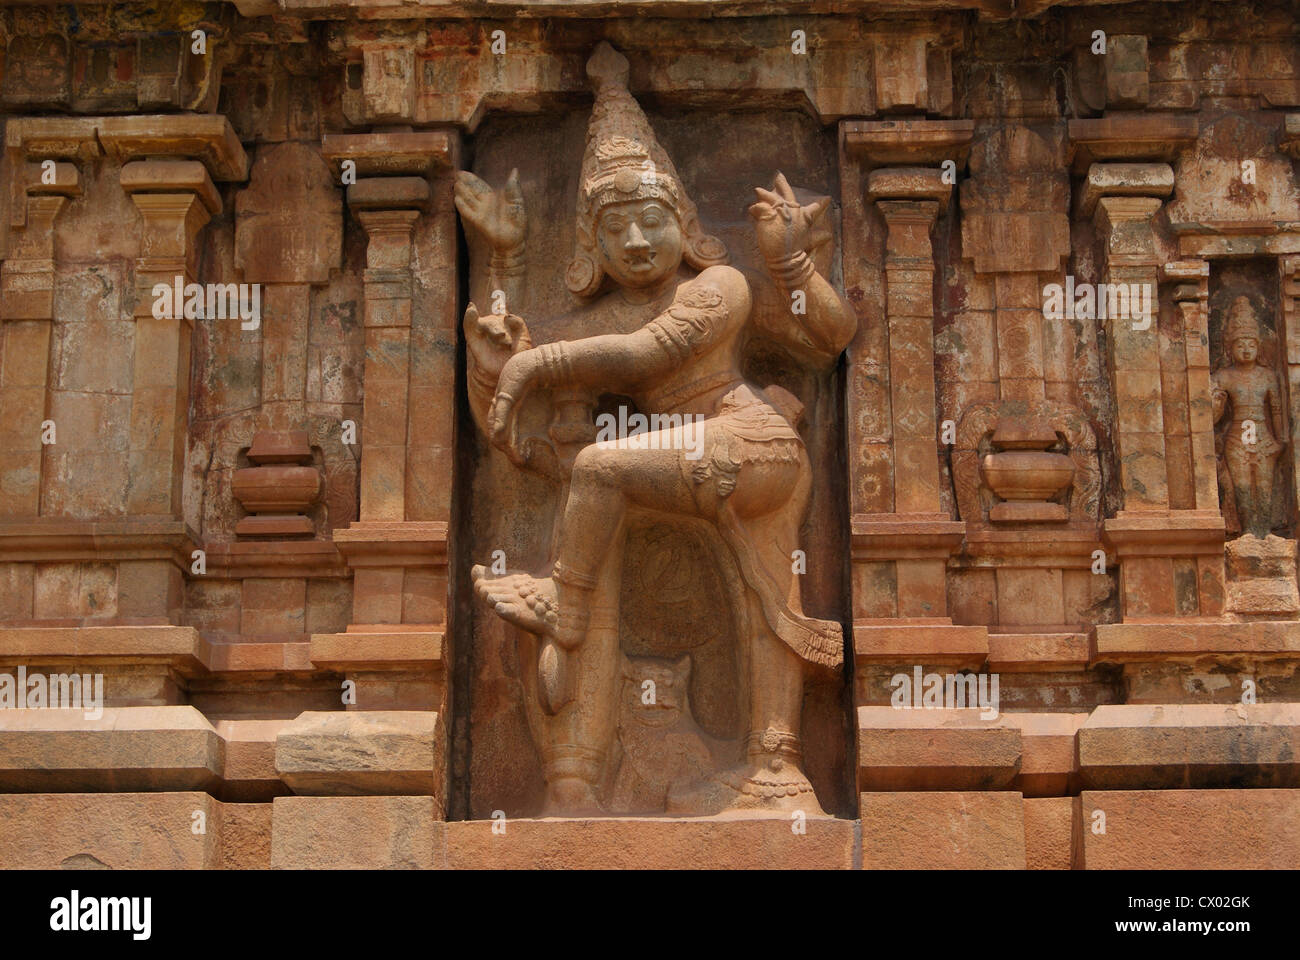 Antica architettonici indù opere di scultura scolpita in grosse pietre a Thanjavur Tempio Brihadeeswara.Tanjore Tempio siti UNESCO Foto Stock